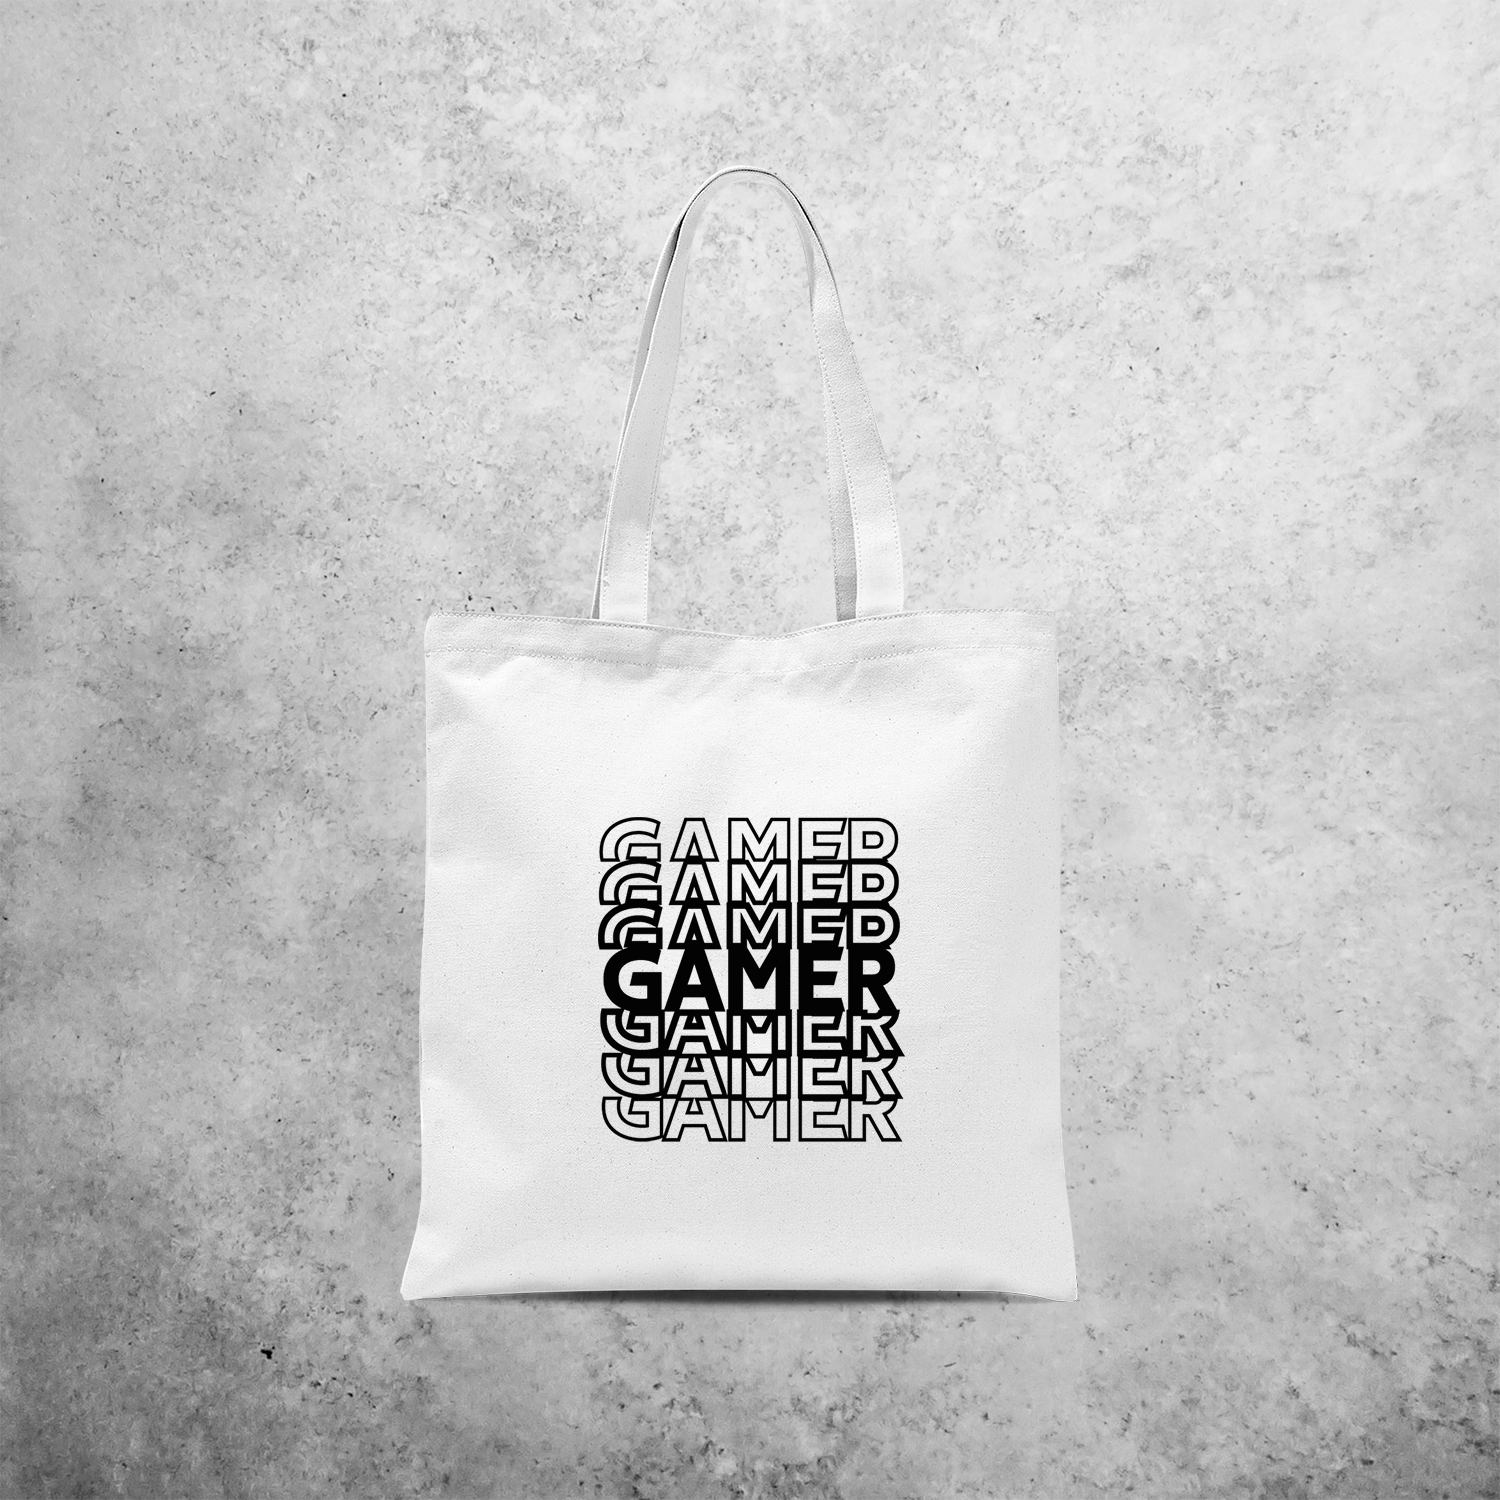 'Gamer' tote bag